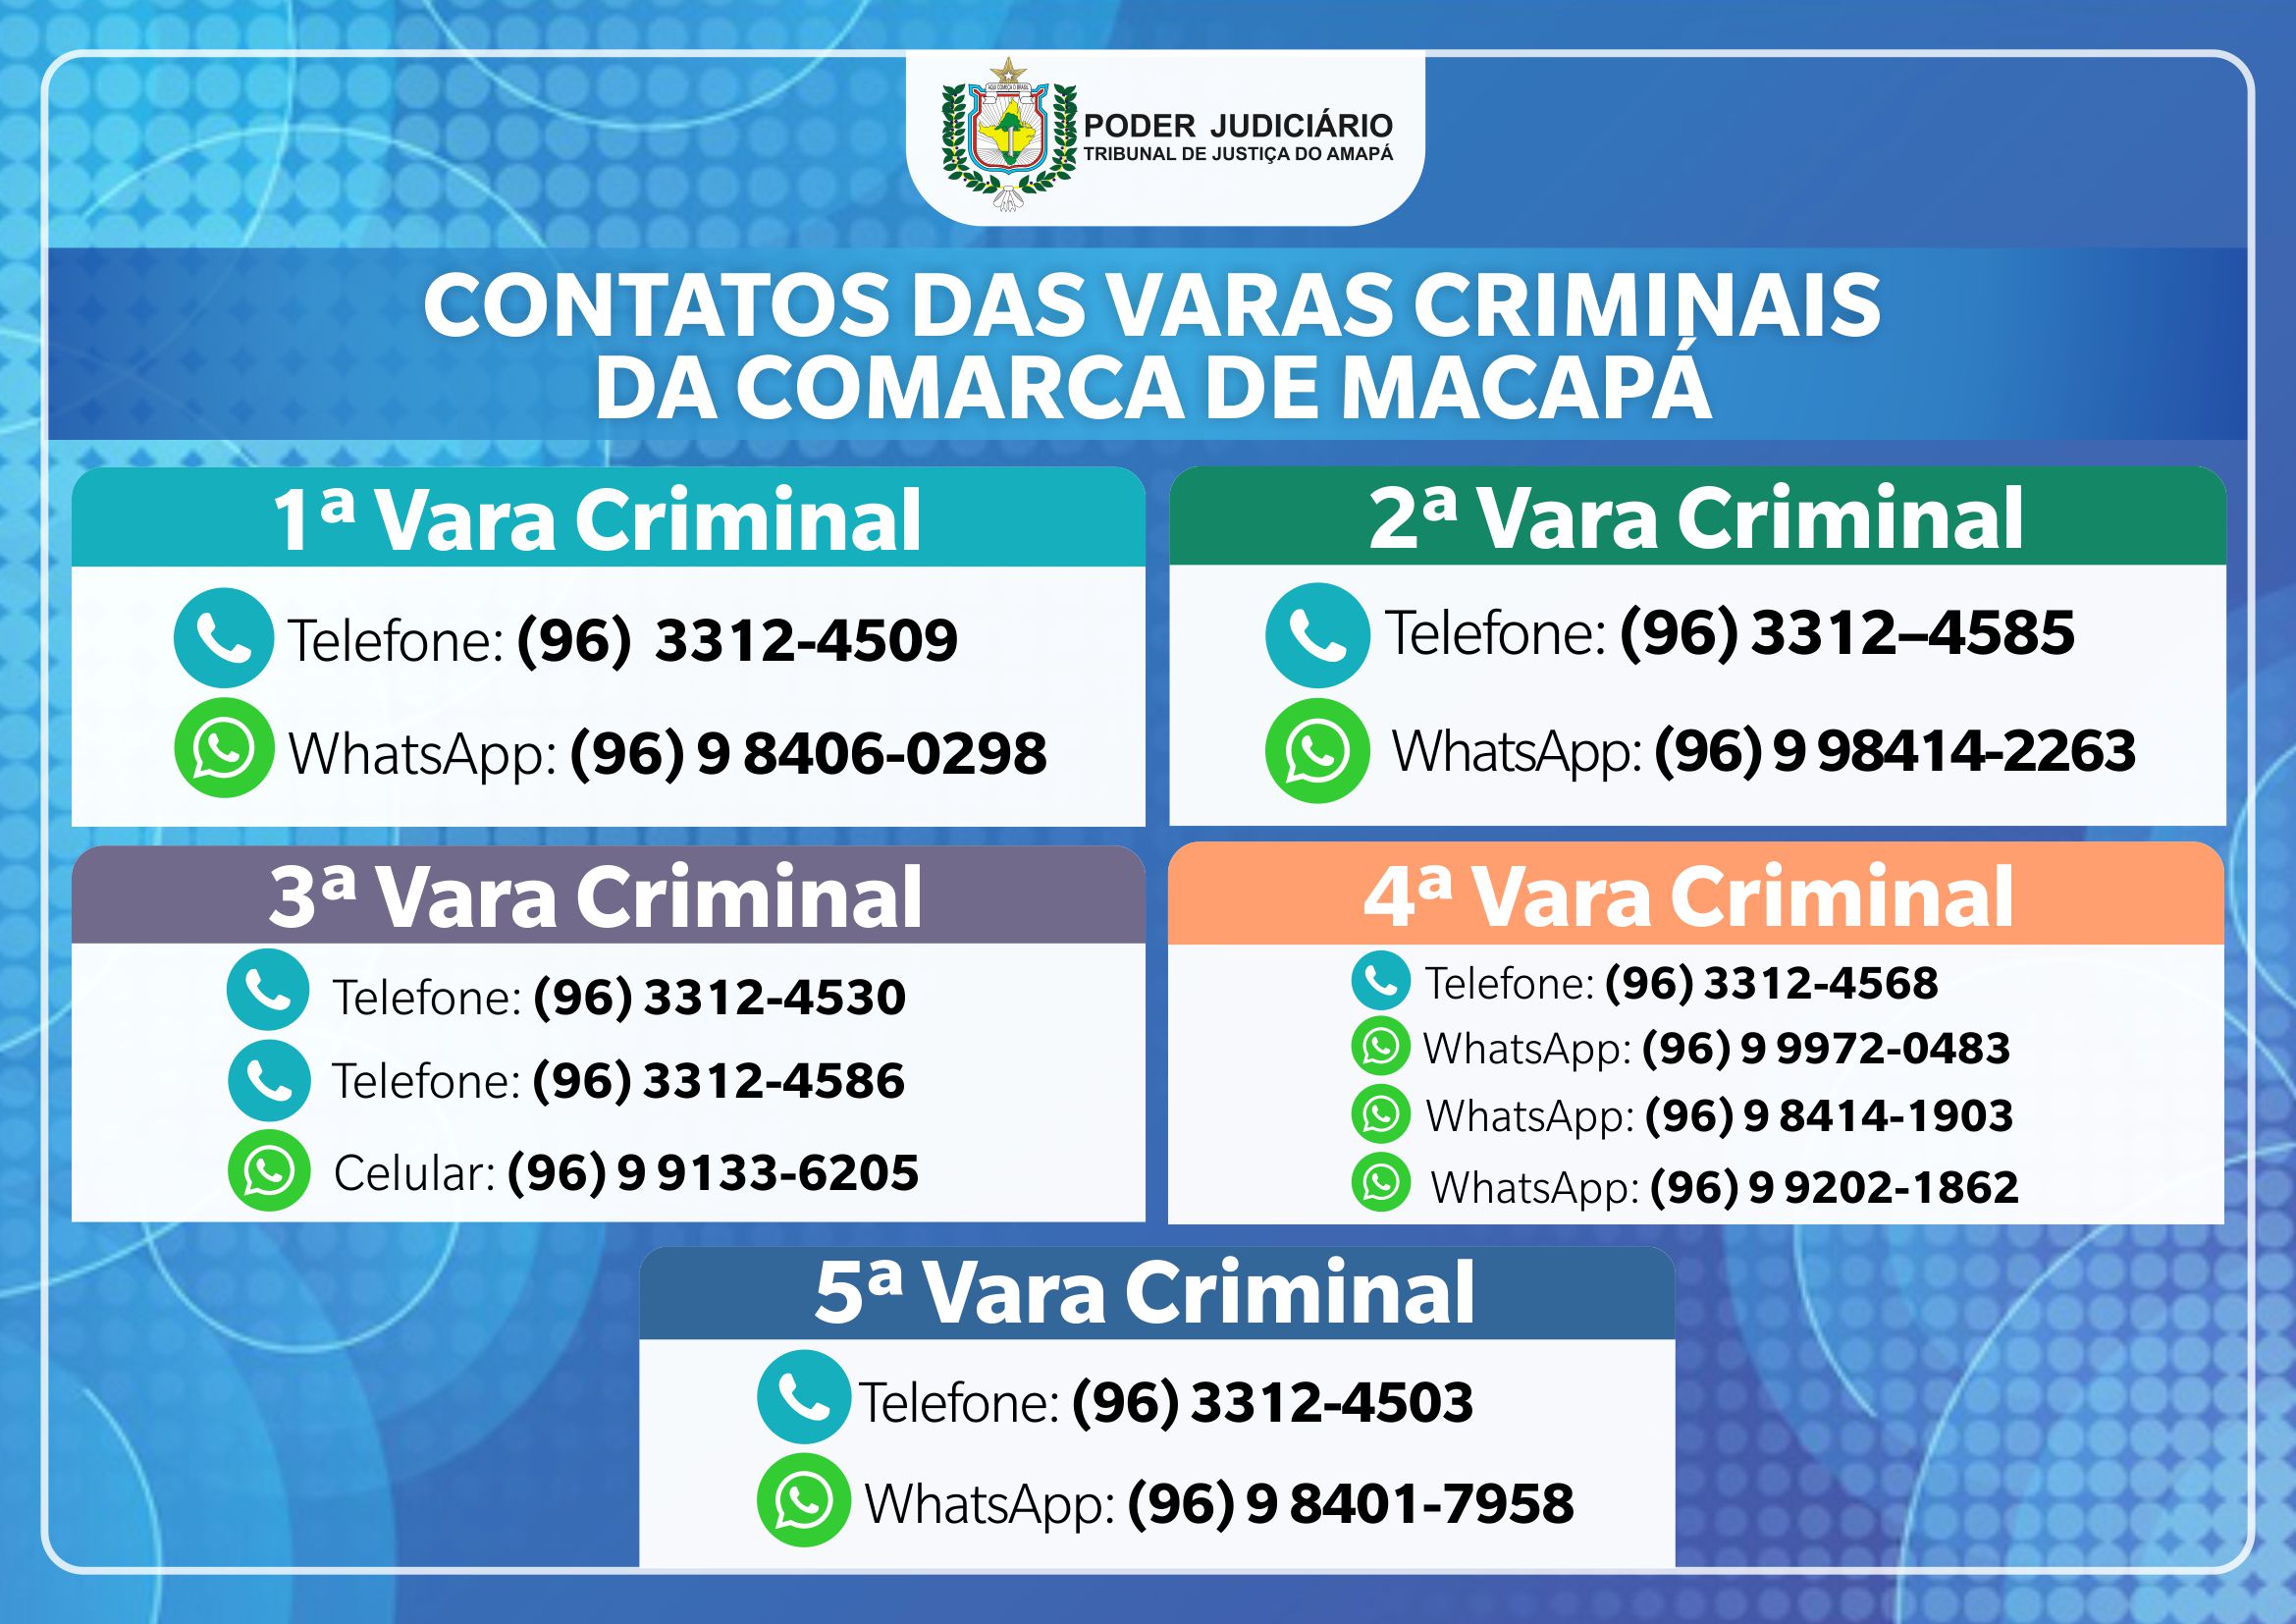 CONTATOS_VARAS_CRIMINAIS.jpg